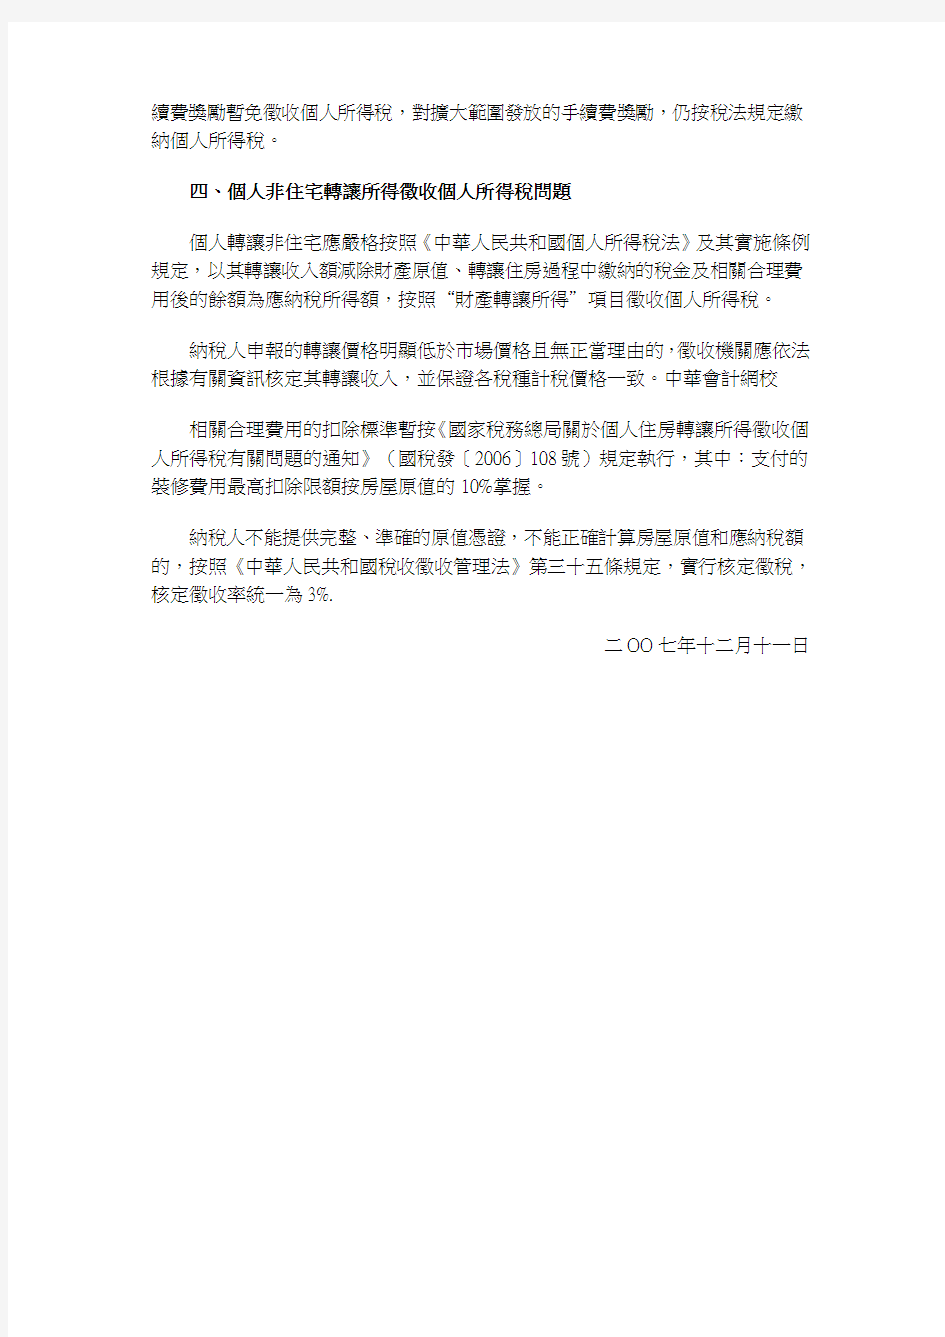 重庆市地方税务局关於明确个人所得税有关政策问题的通知